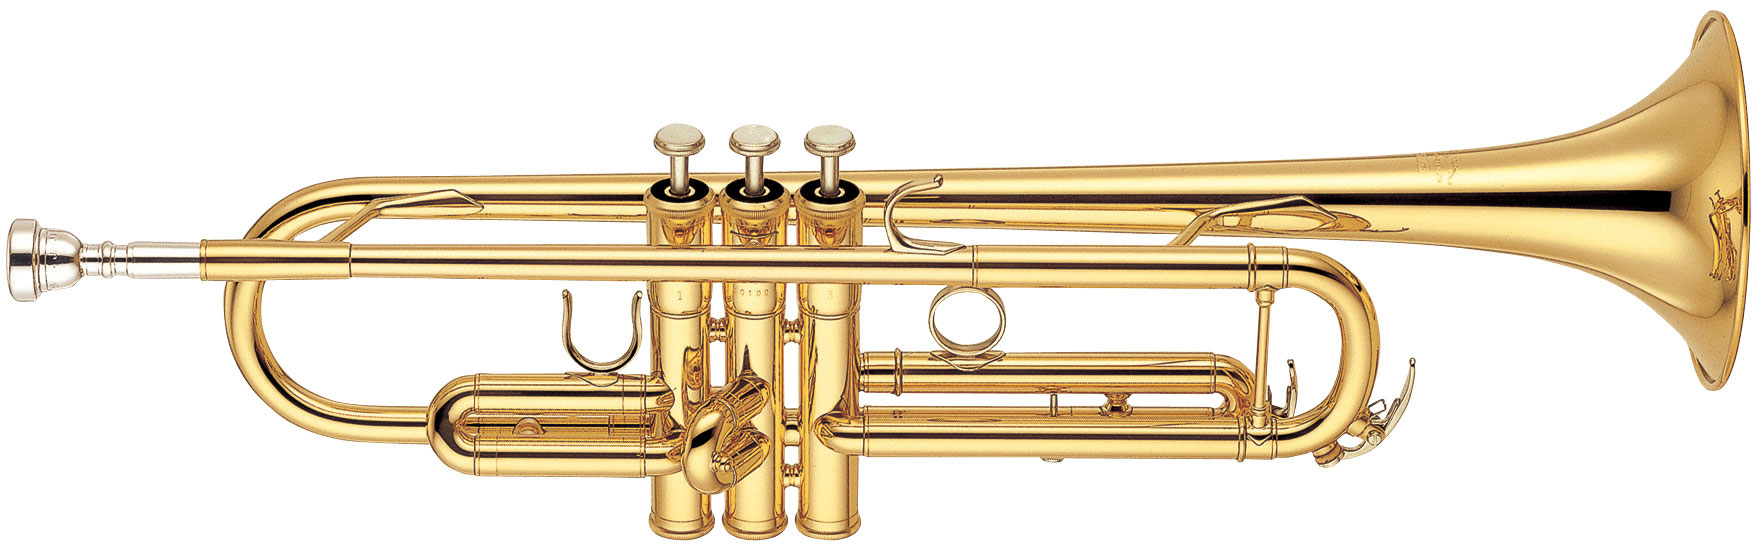 YTR-6345 G Trompete Bb